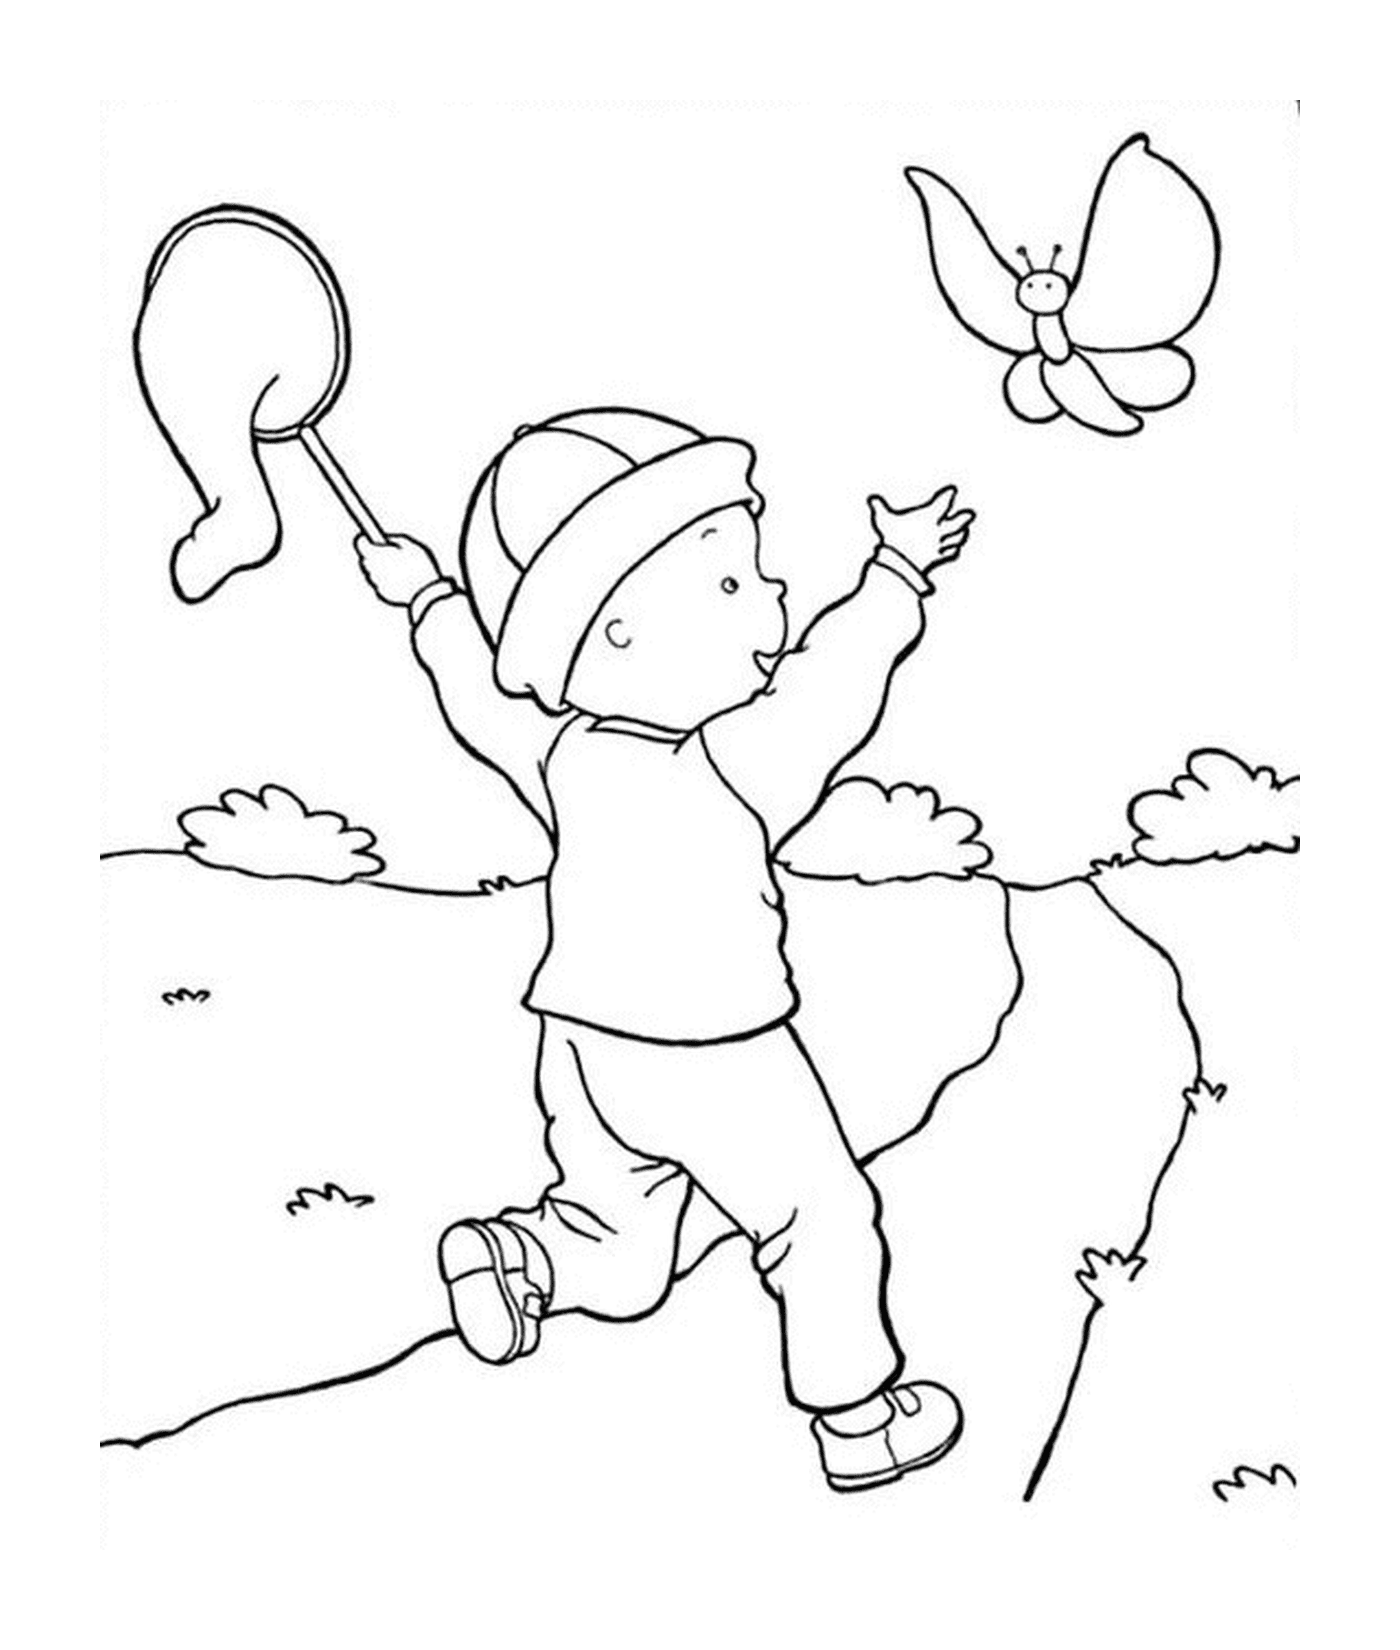  Child flying kite 